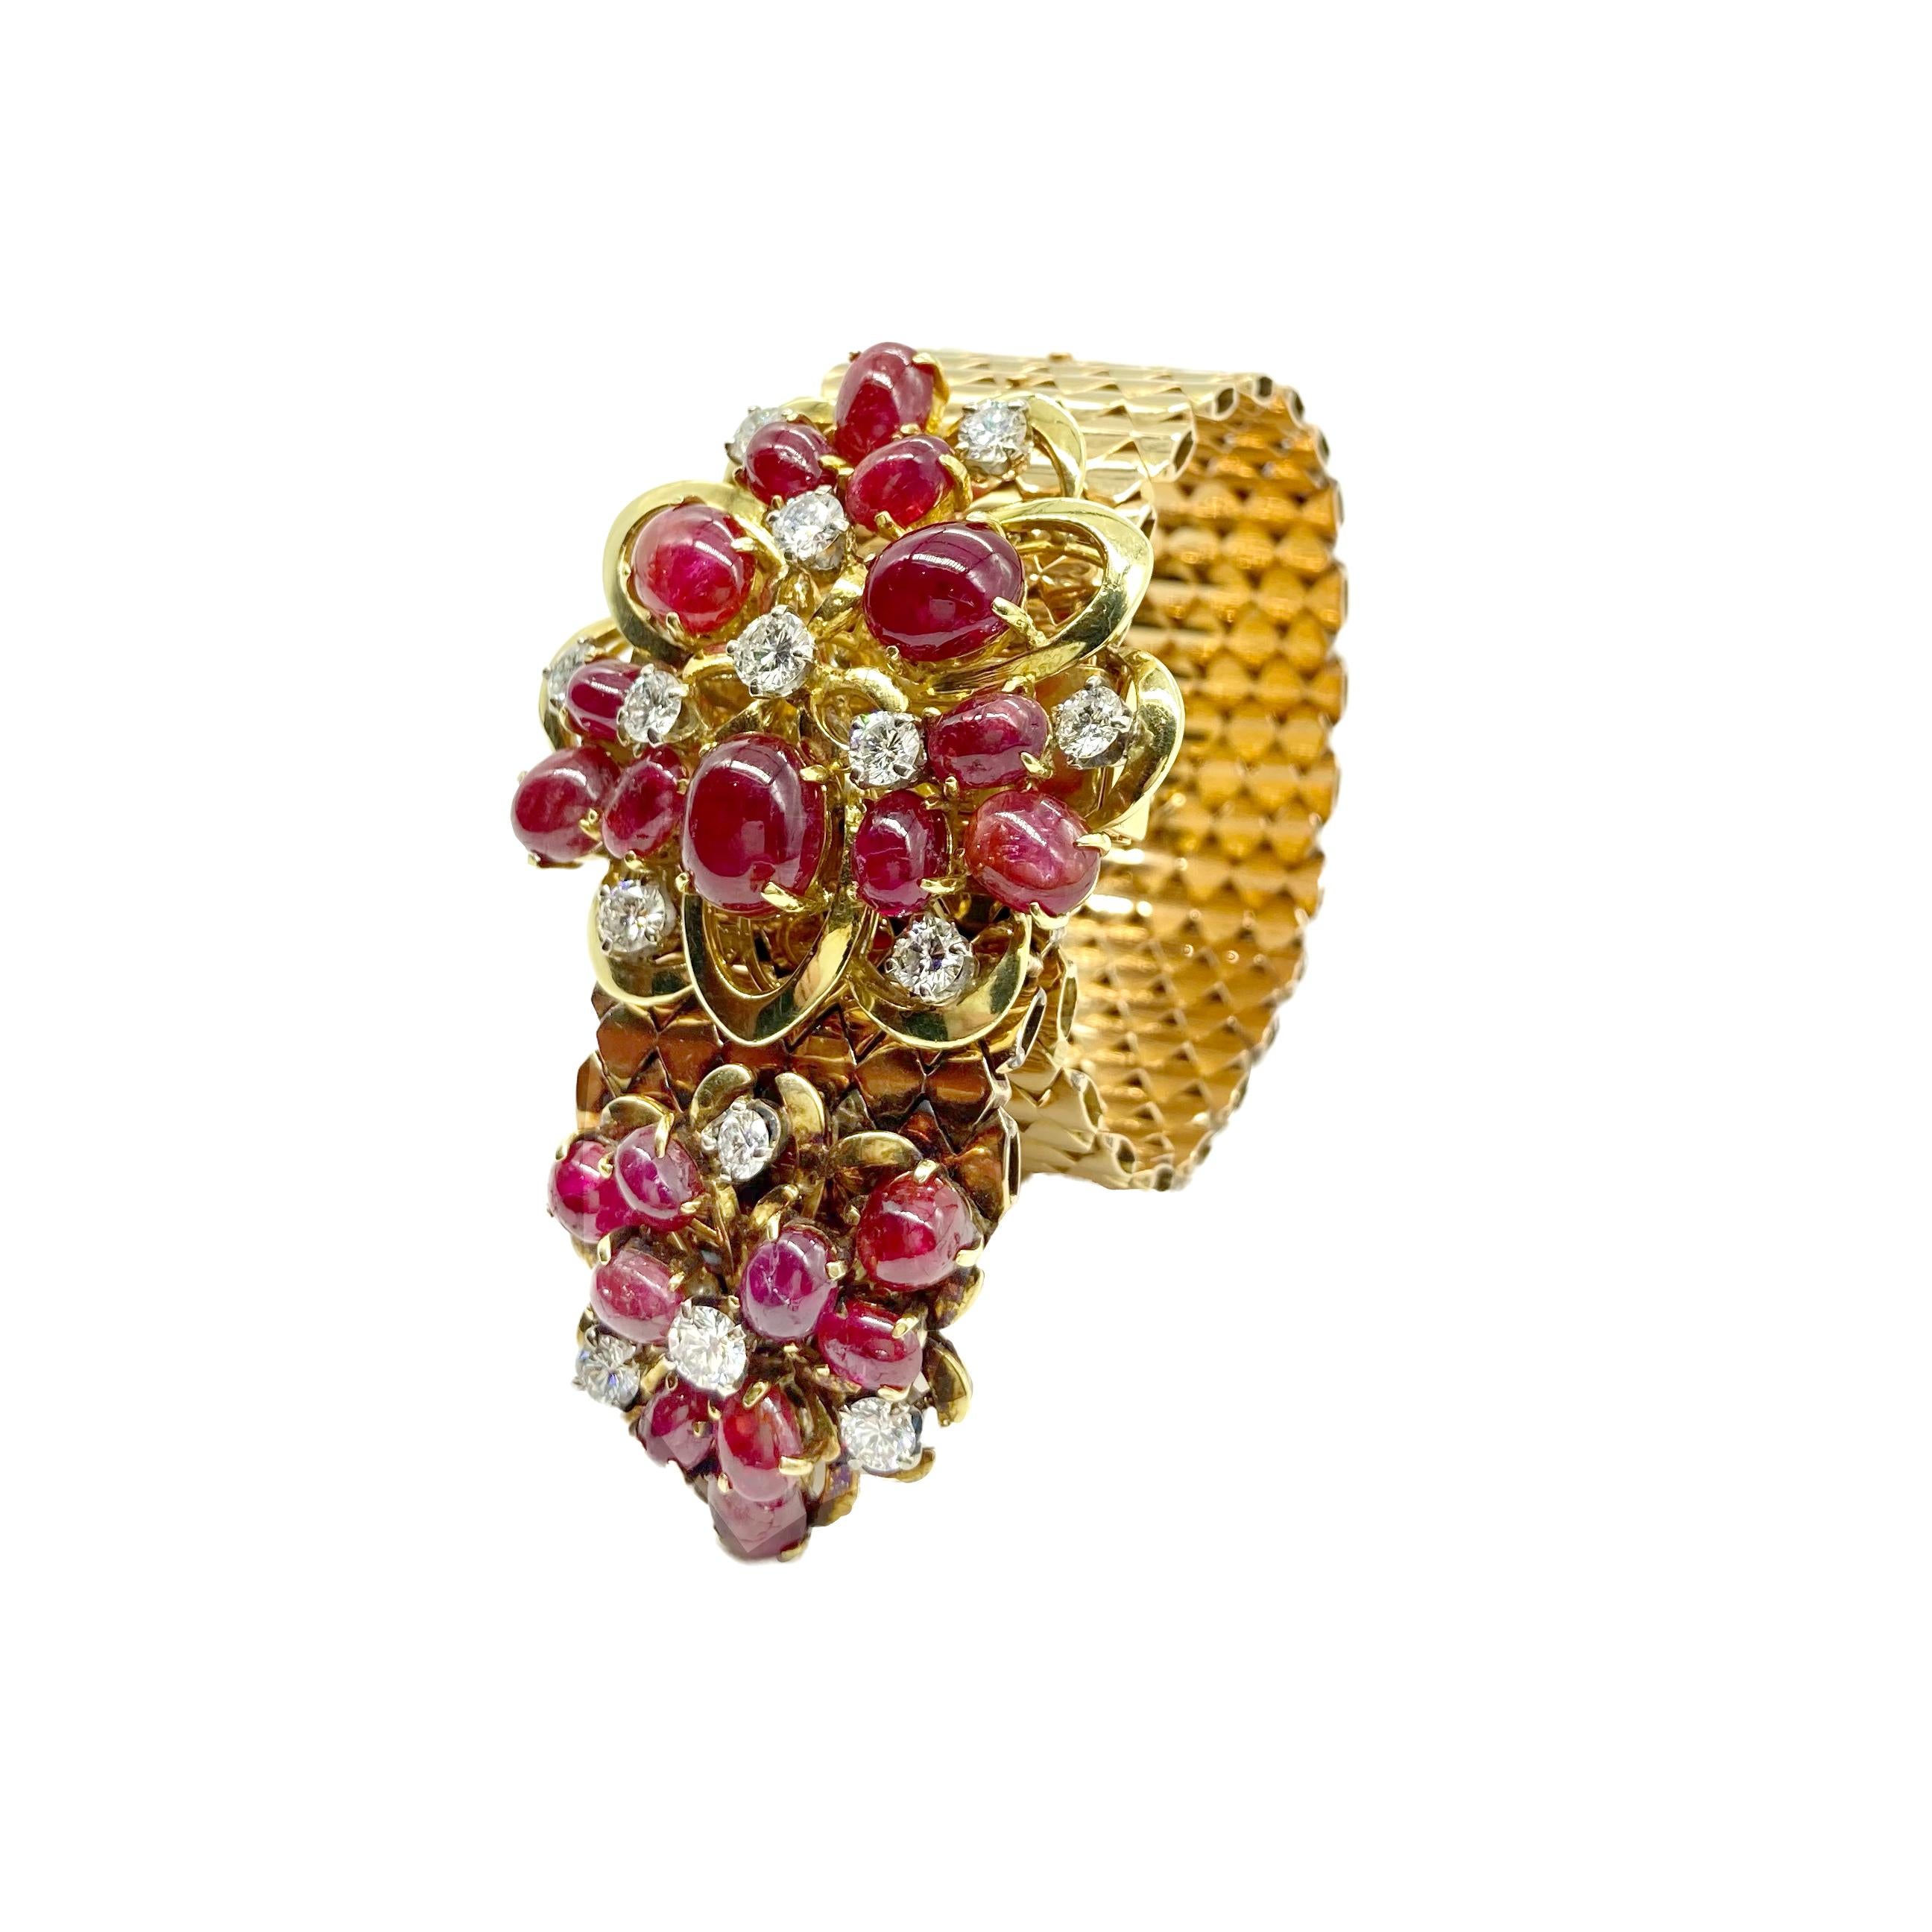 Bracelet rétro à glissière réglable en or jaune 18 carats avec 14 diamants ronds (3,15 cts environ) et 21 rubis ovales cabochon. Fabriqué en France, vers 1940.  